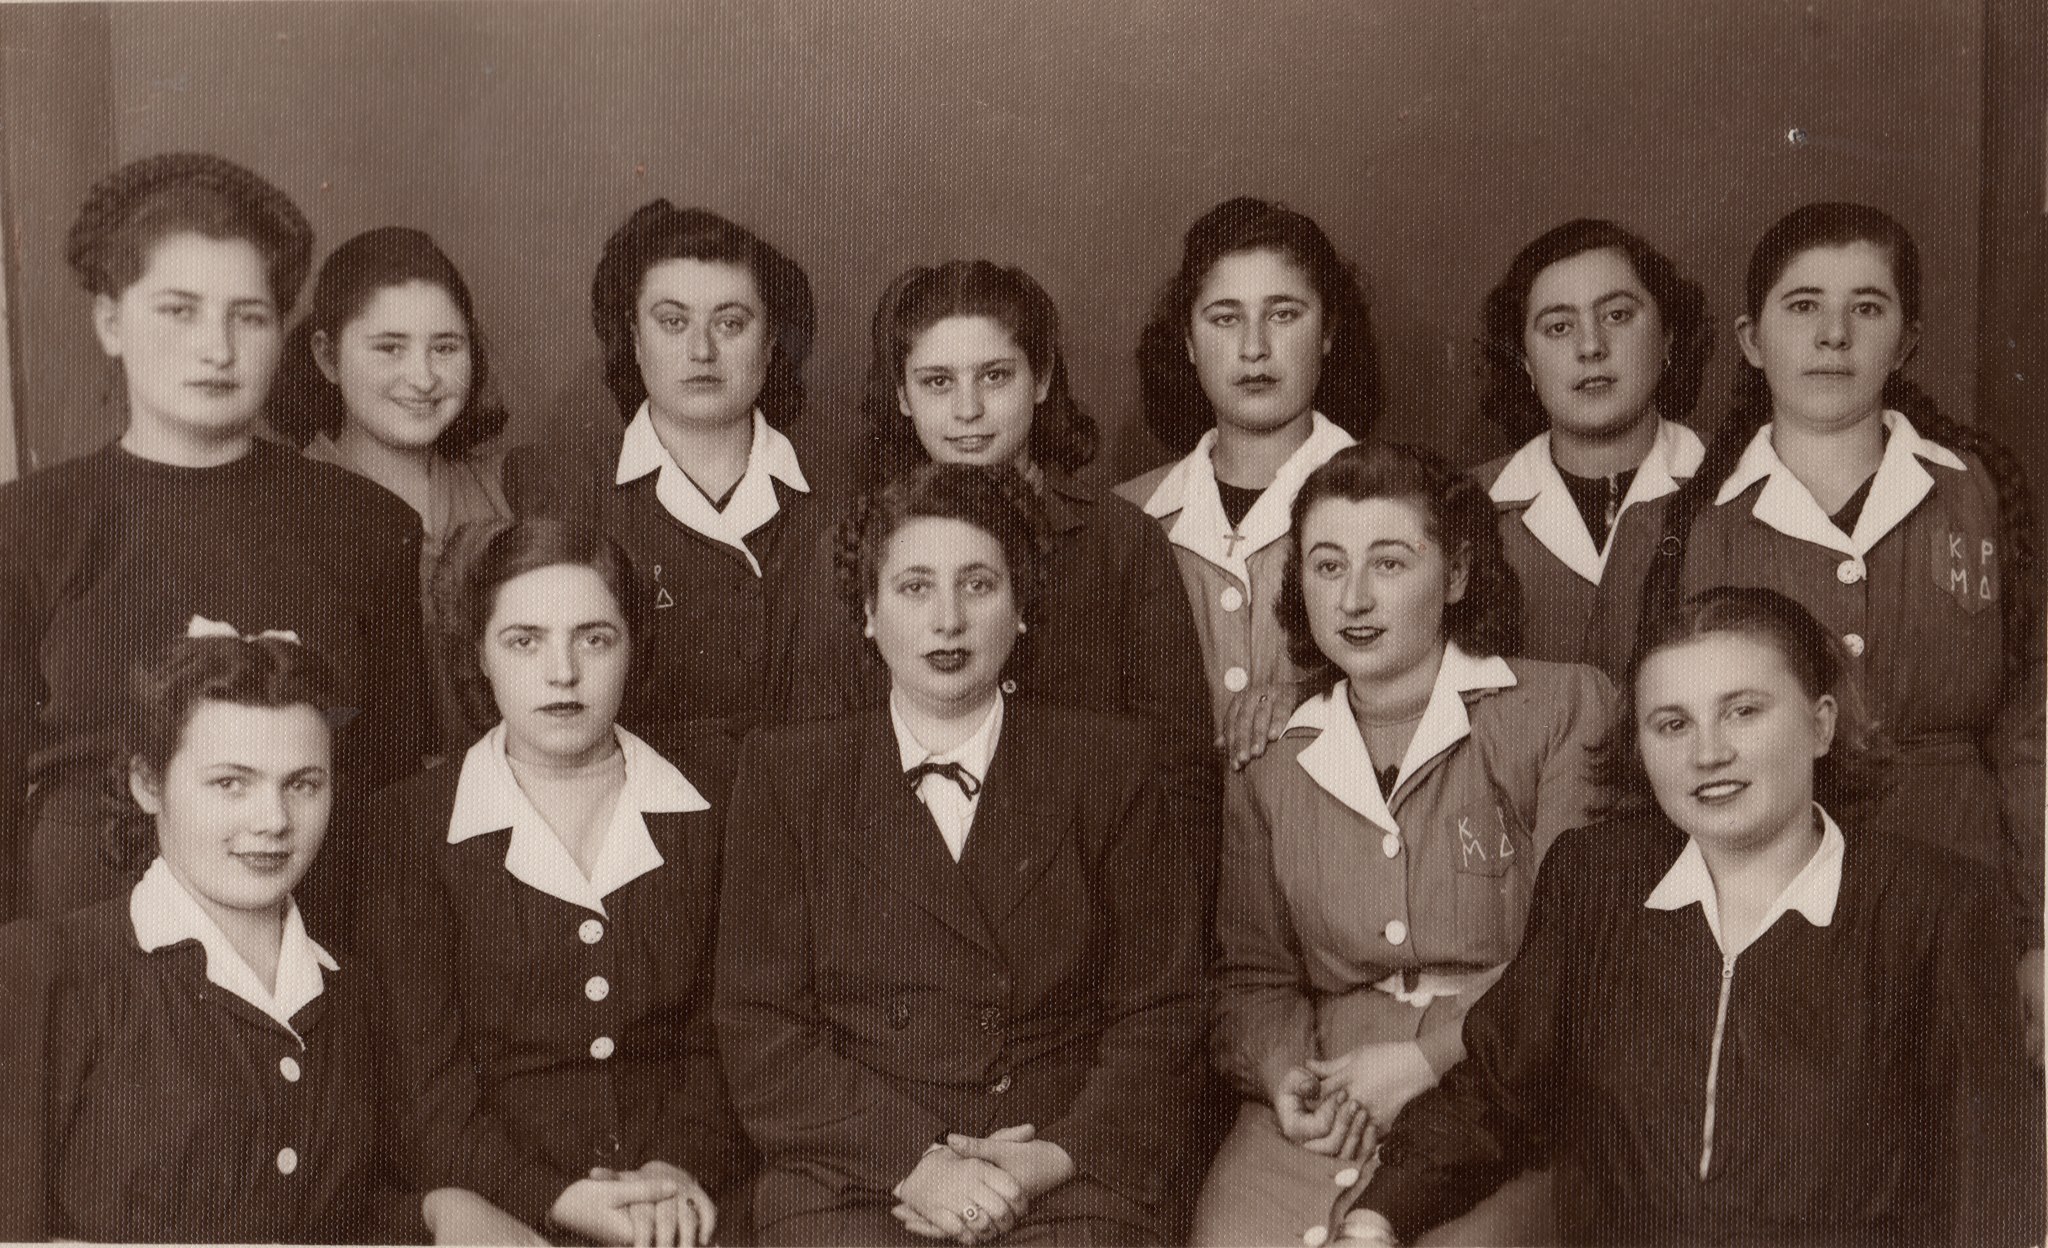 Η Μαρία Διαμάντη αναβιώνει το ιστορικό ατελιέ   σχολή μόδας της γιαγιάς της από το 1930